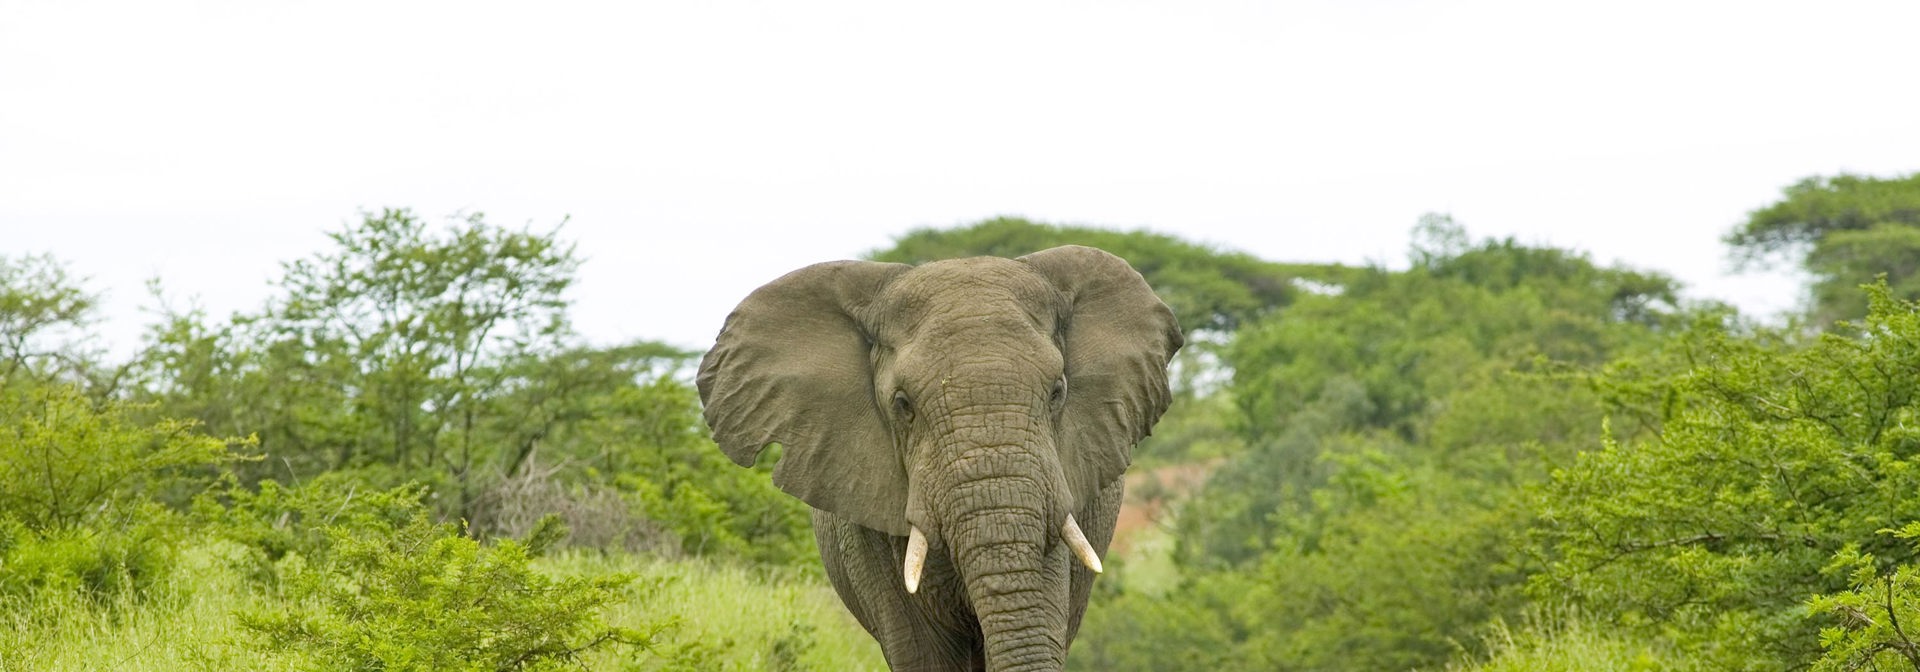 sydafrika - elephant national park_elefant_02